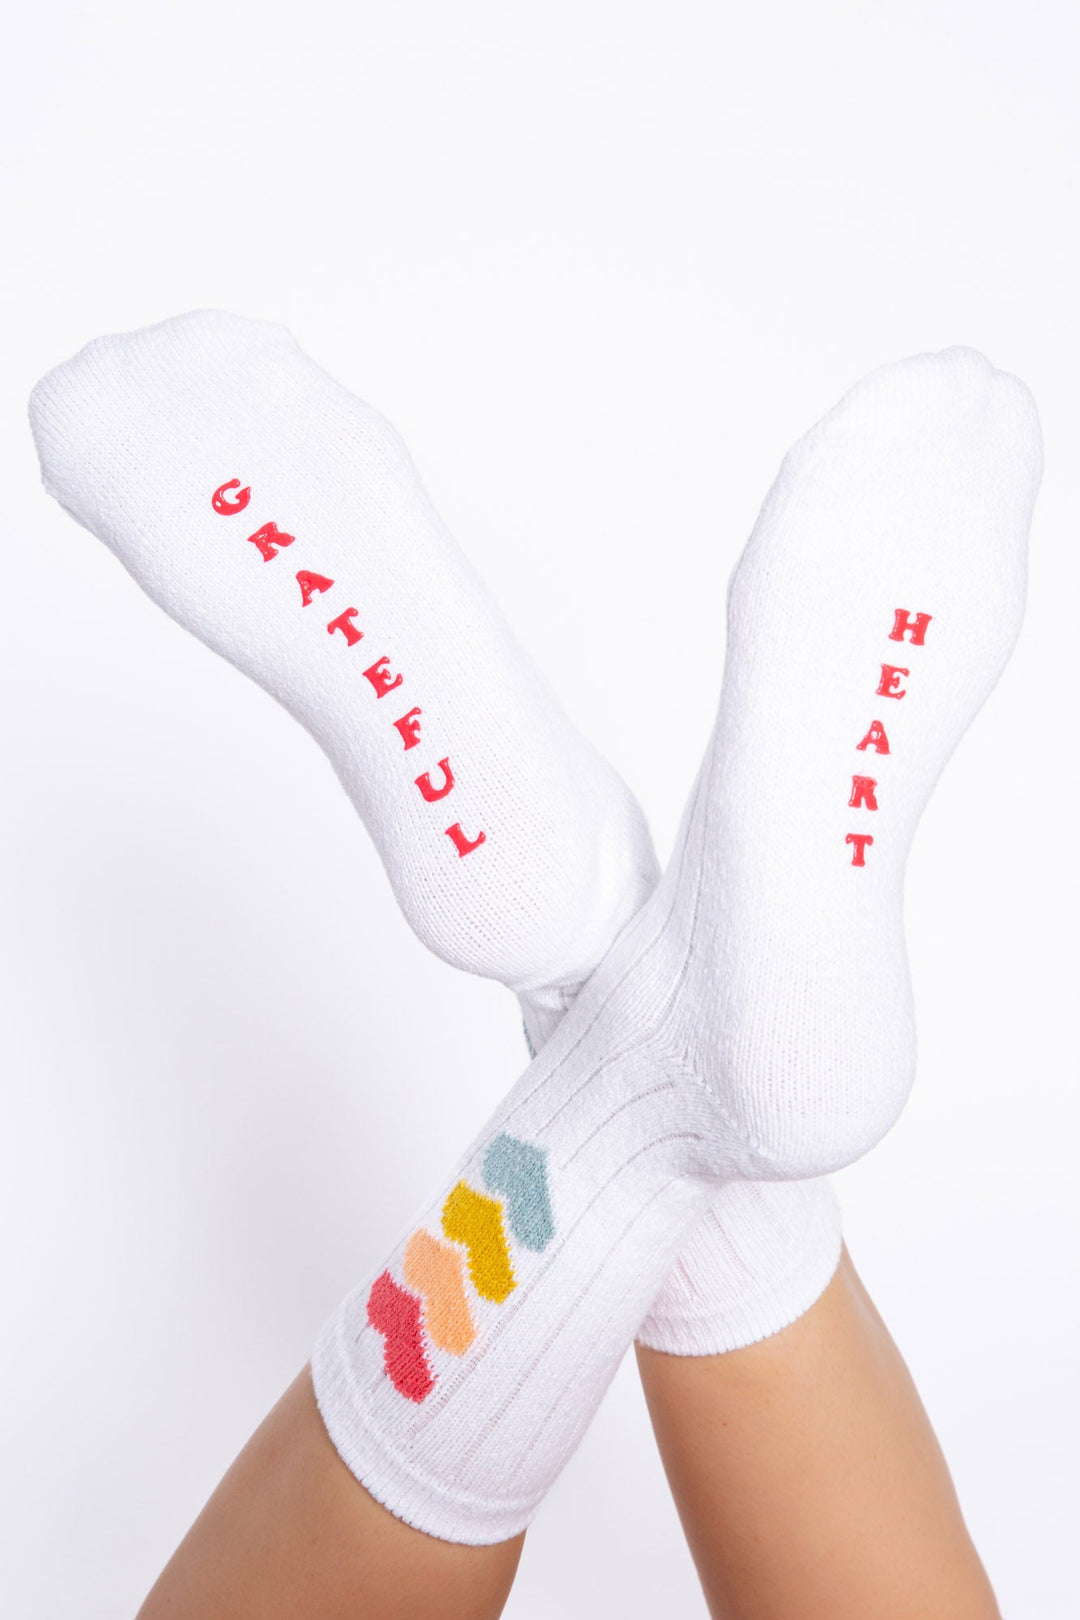 PJ Salvage Fun Socks Grateful Heart Socks